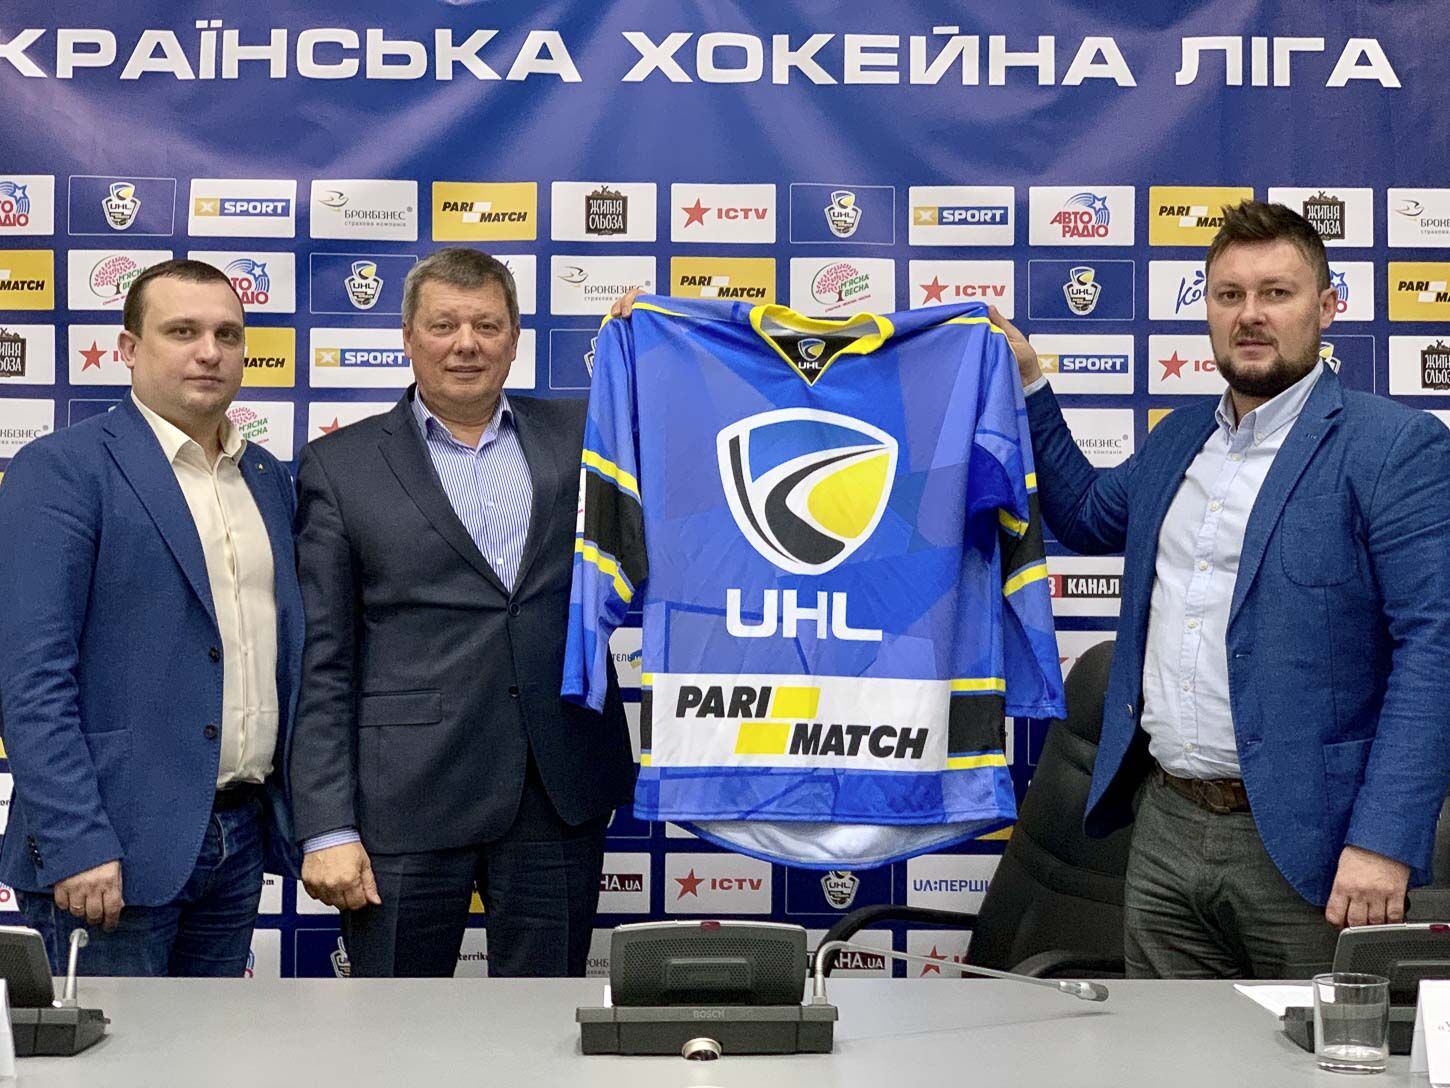 Украинская хоккейная лига презентовала новый логотип: фото и видео